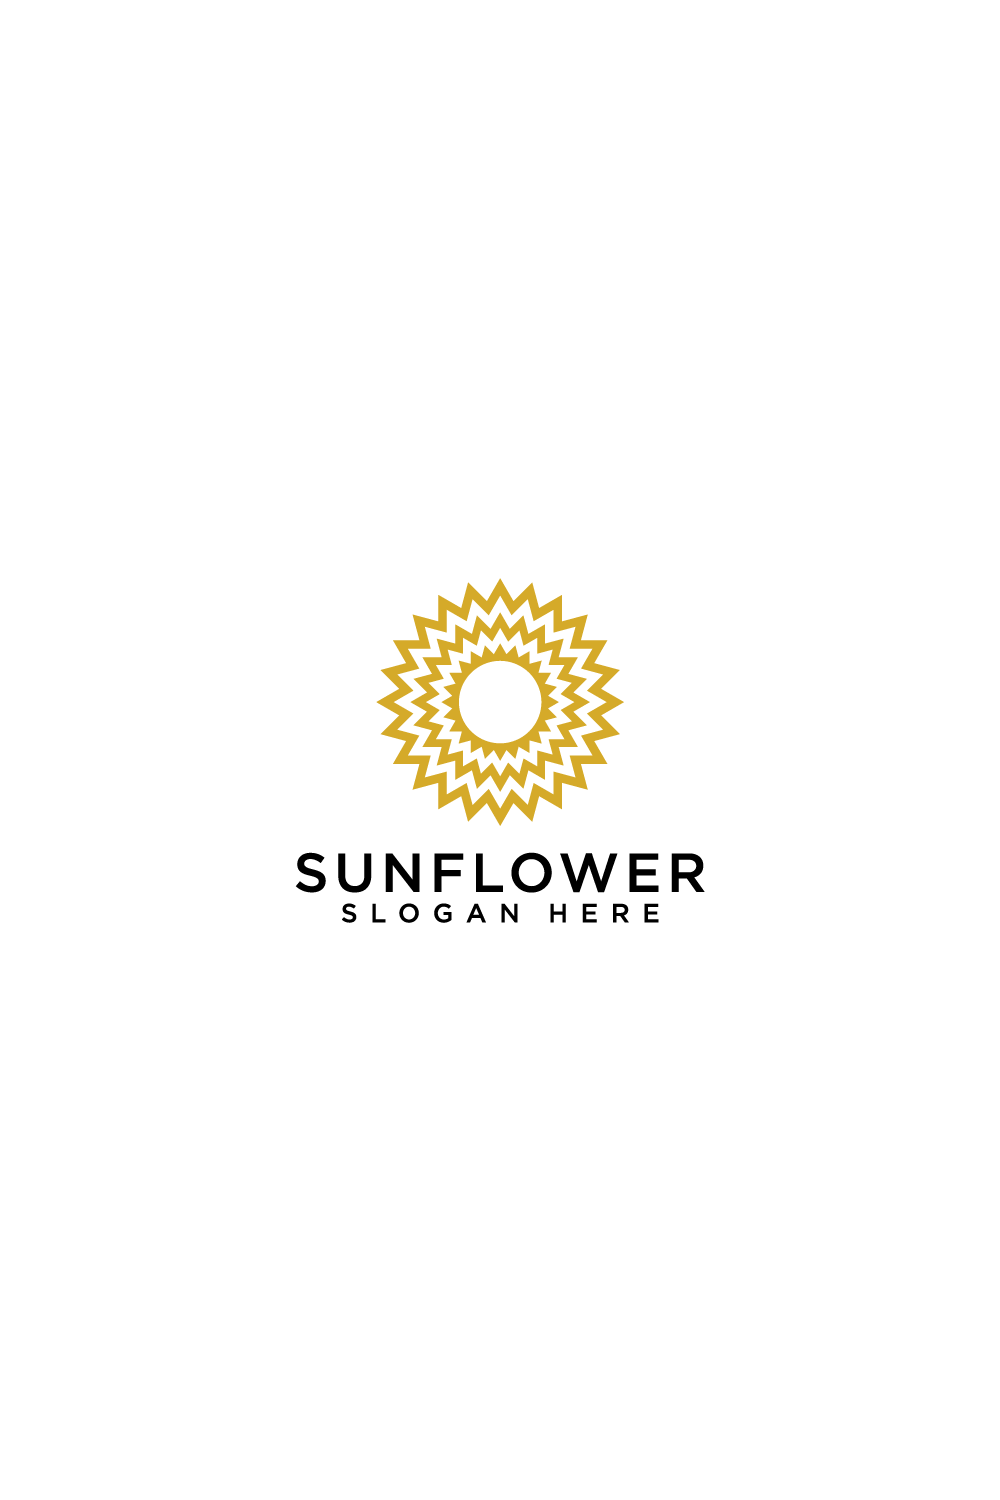 sun flower logo vector design pinterest preview image.